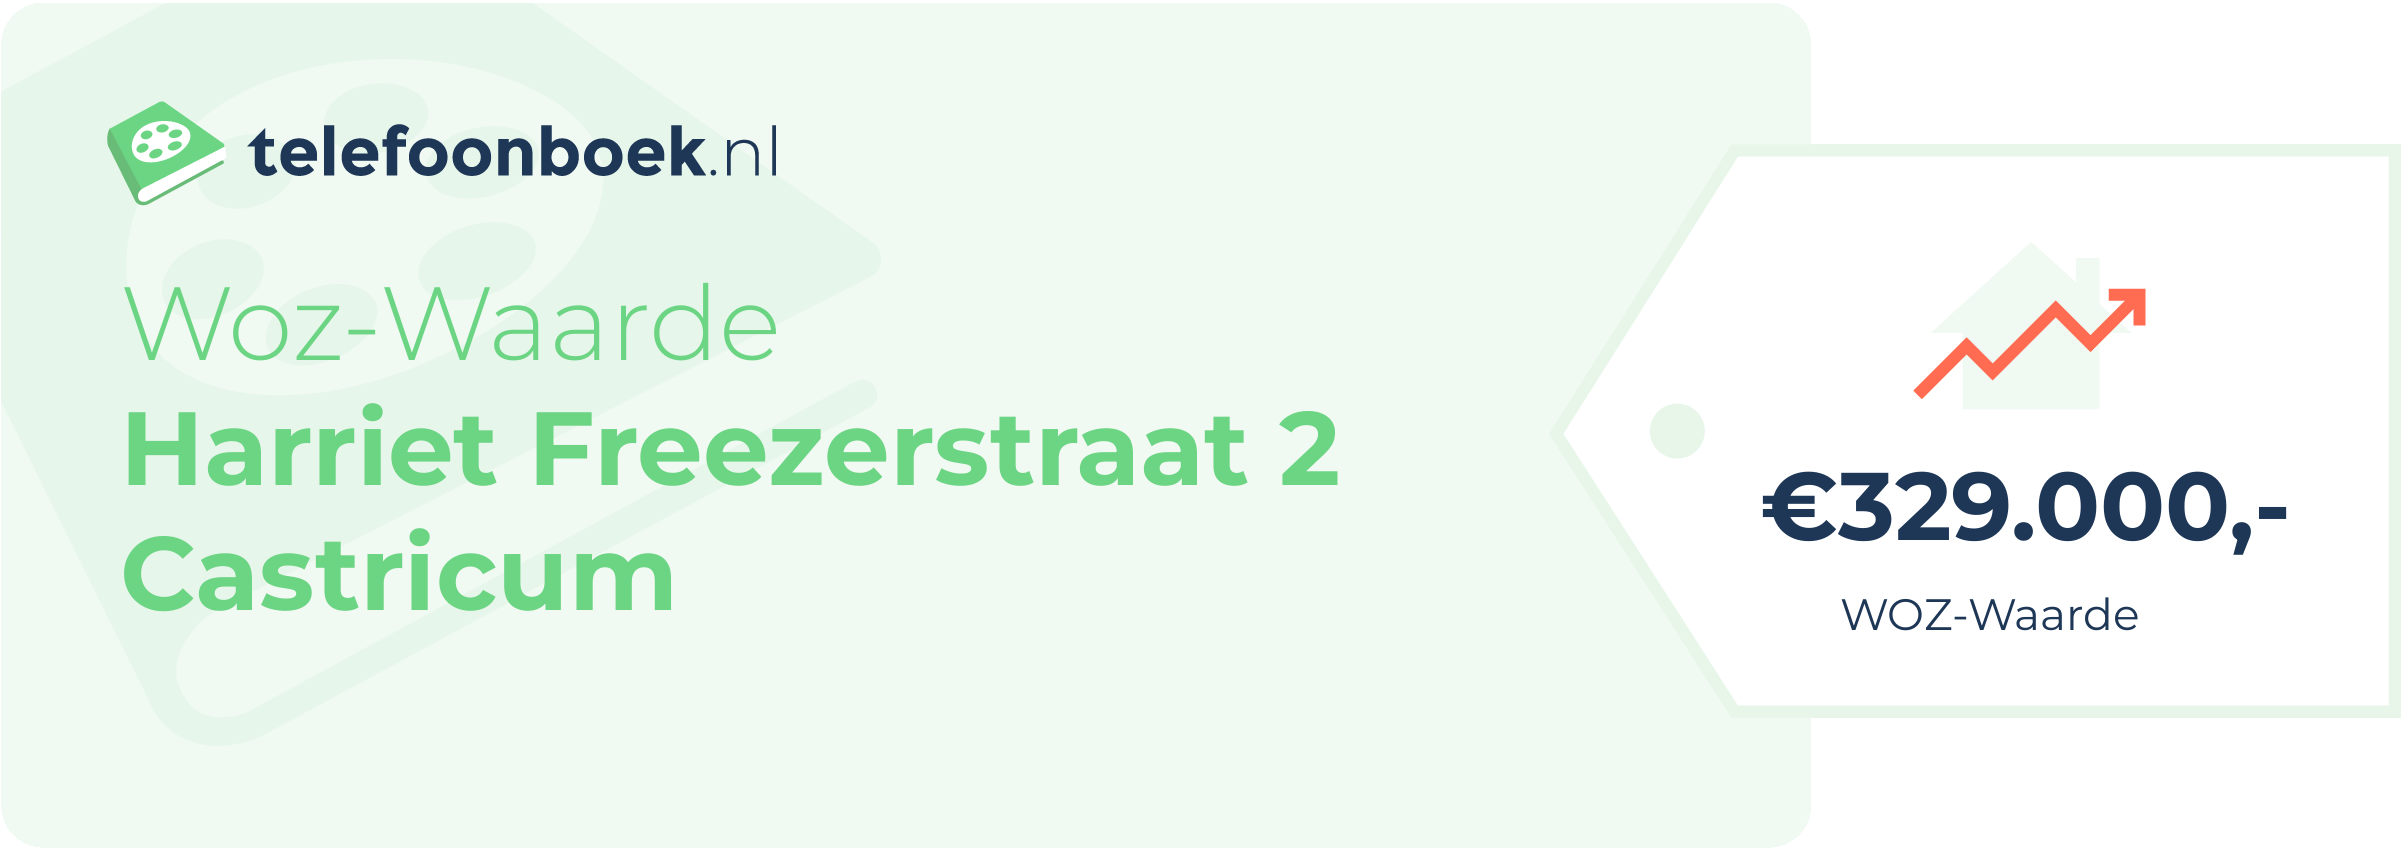 WOZ-waarde Harriet Freezerstraat 2 Castricum